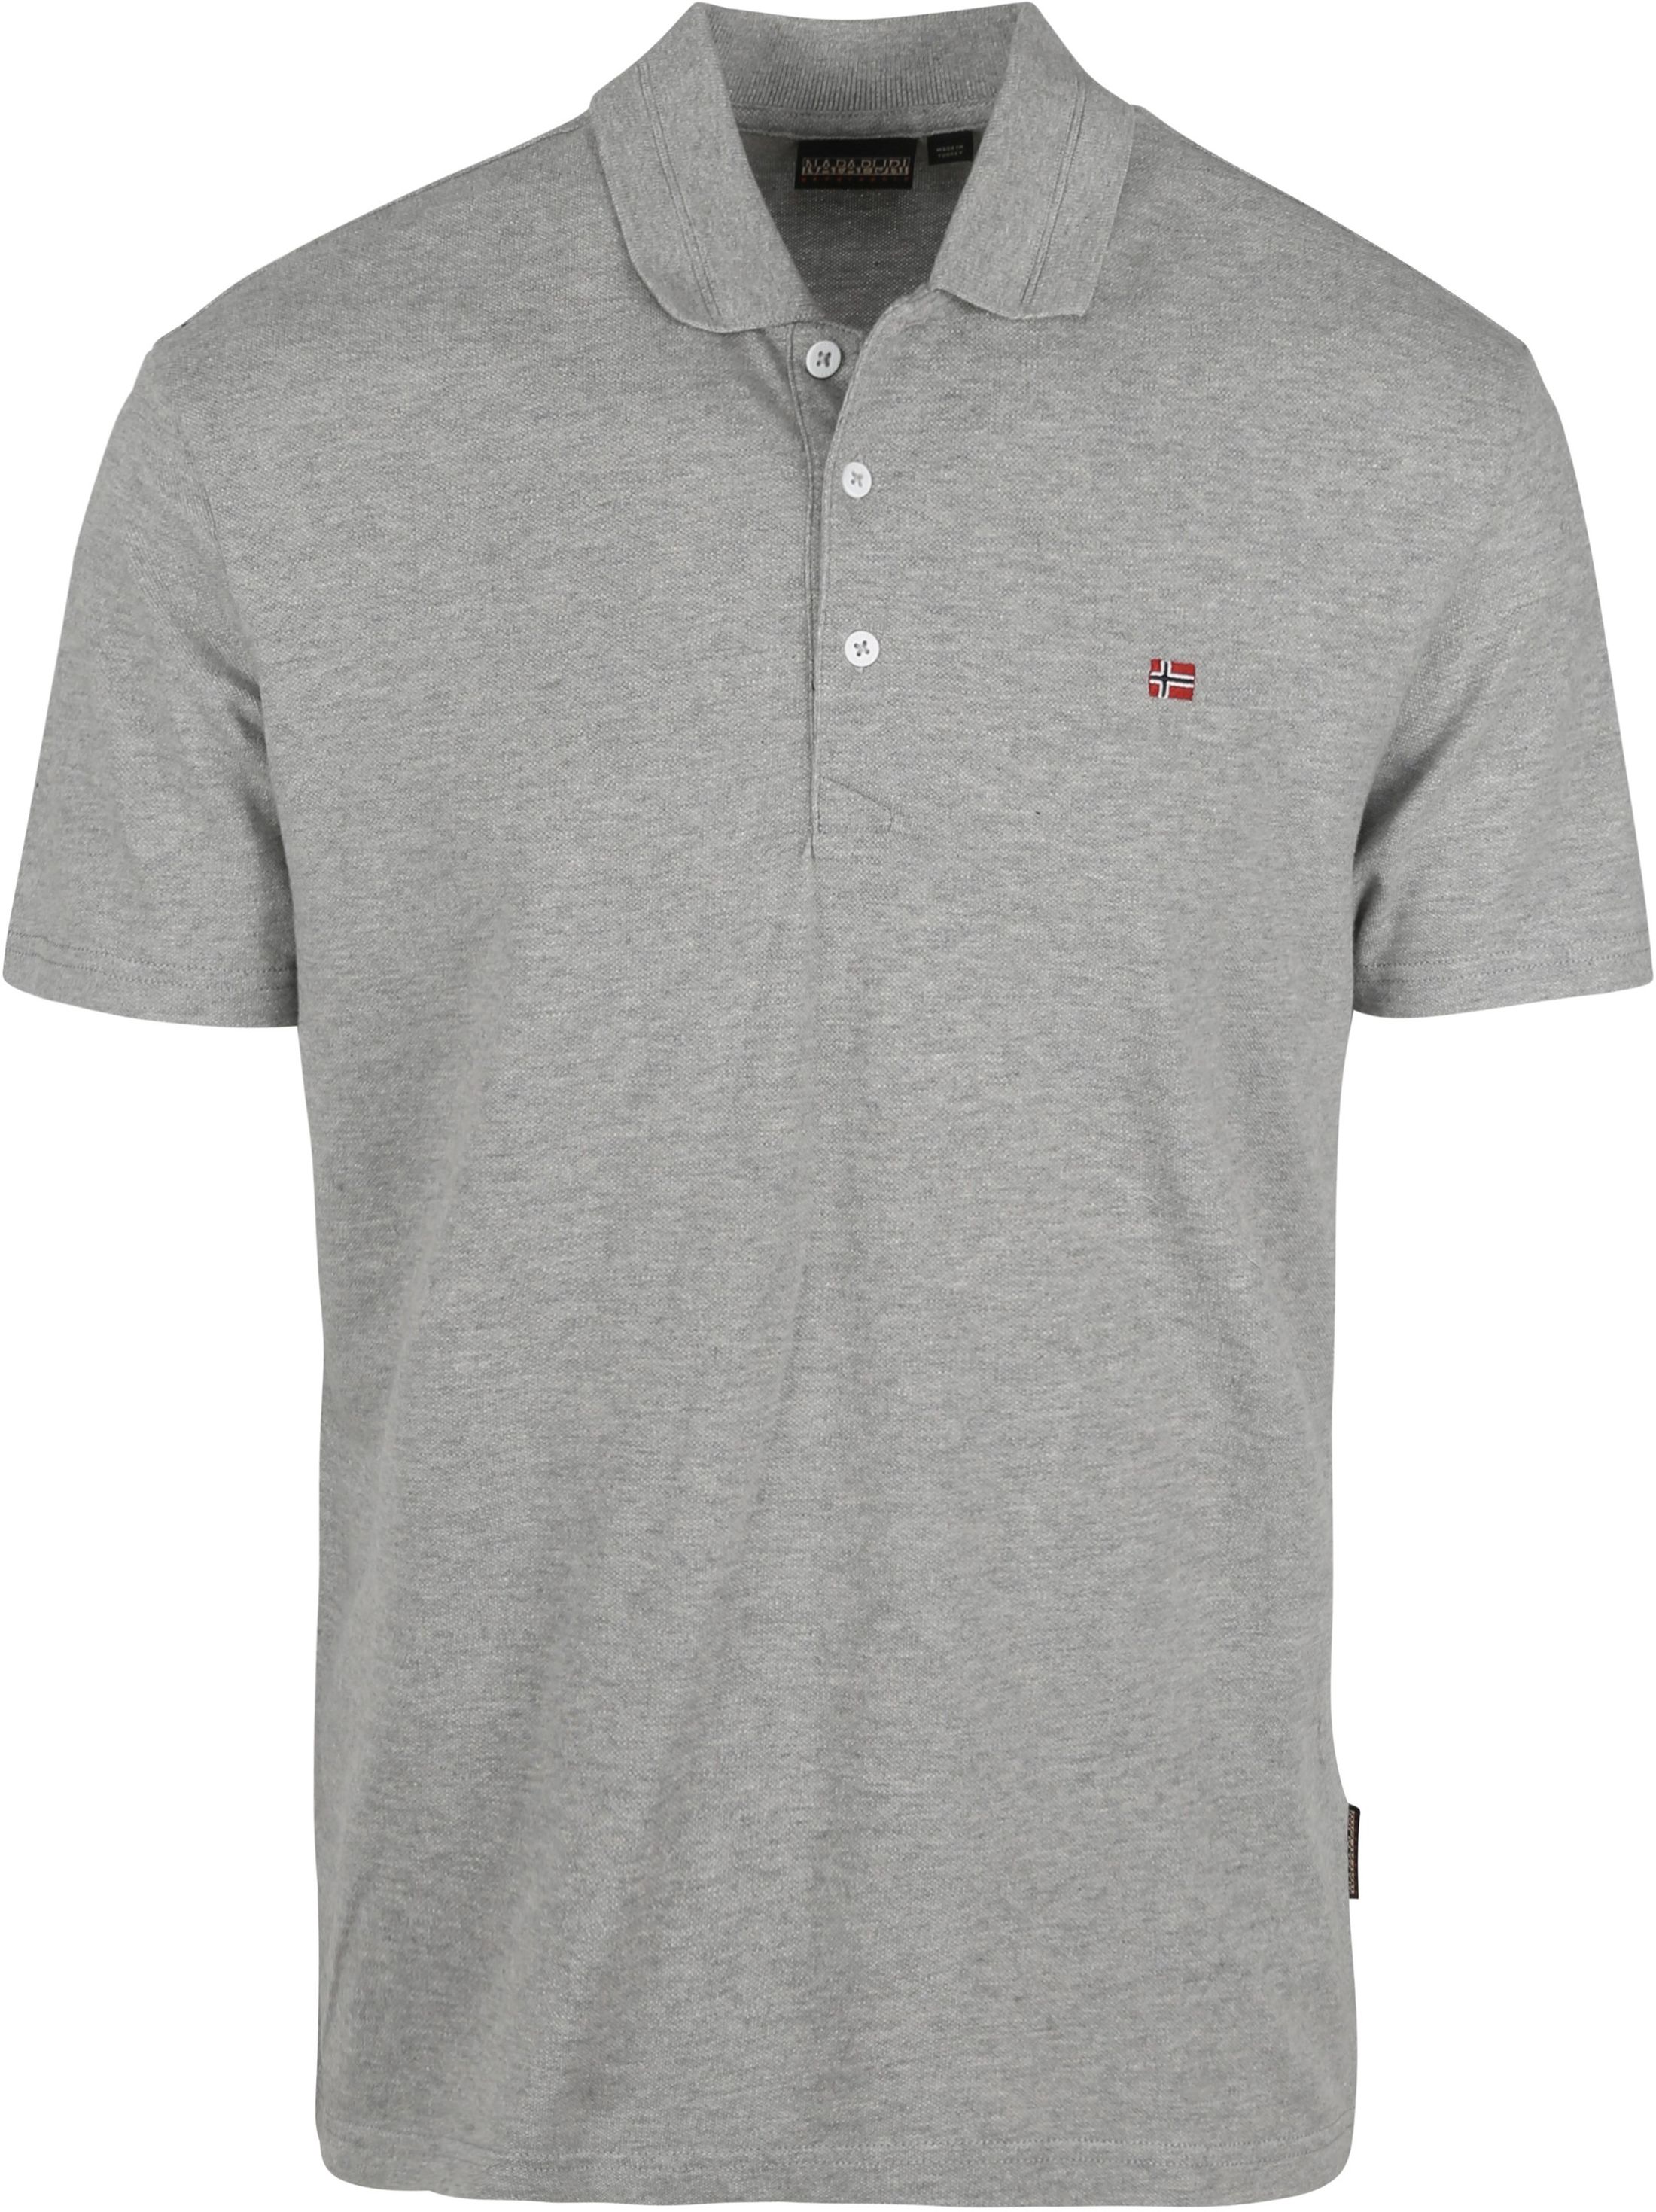 Napapijri Polo Shirt Grey size 3XL